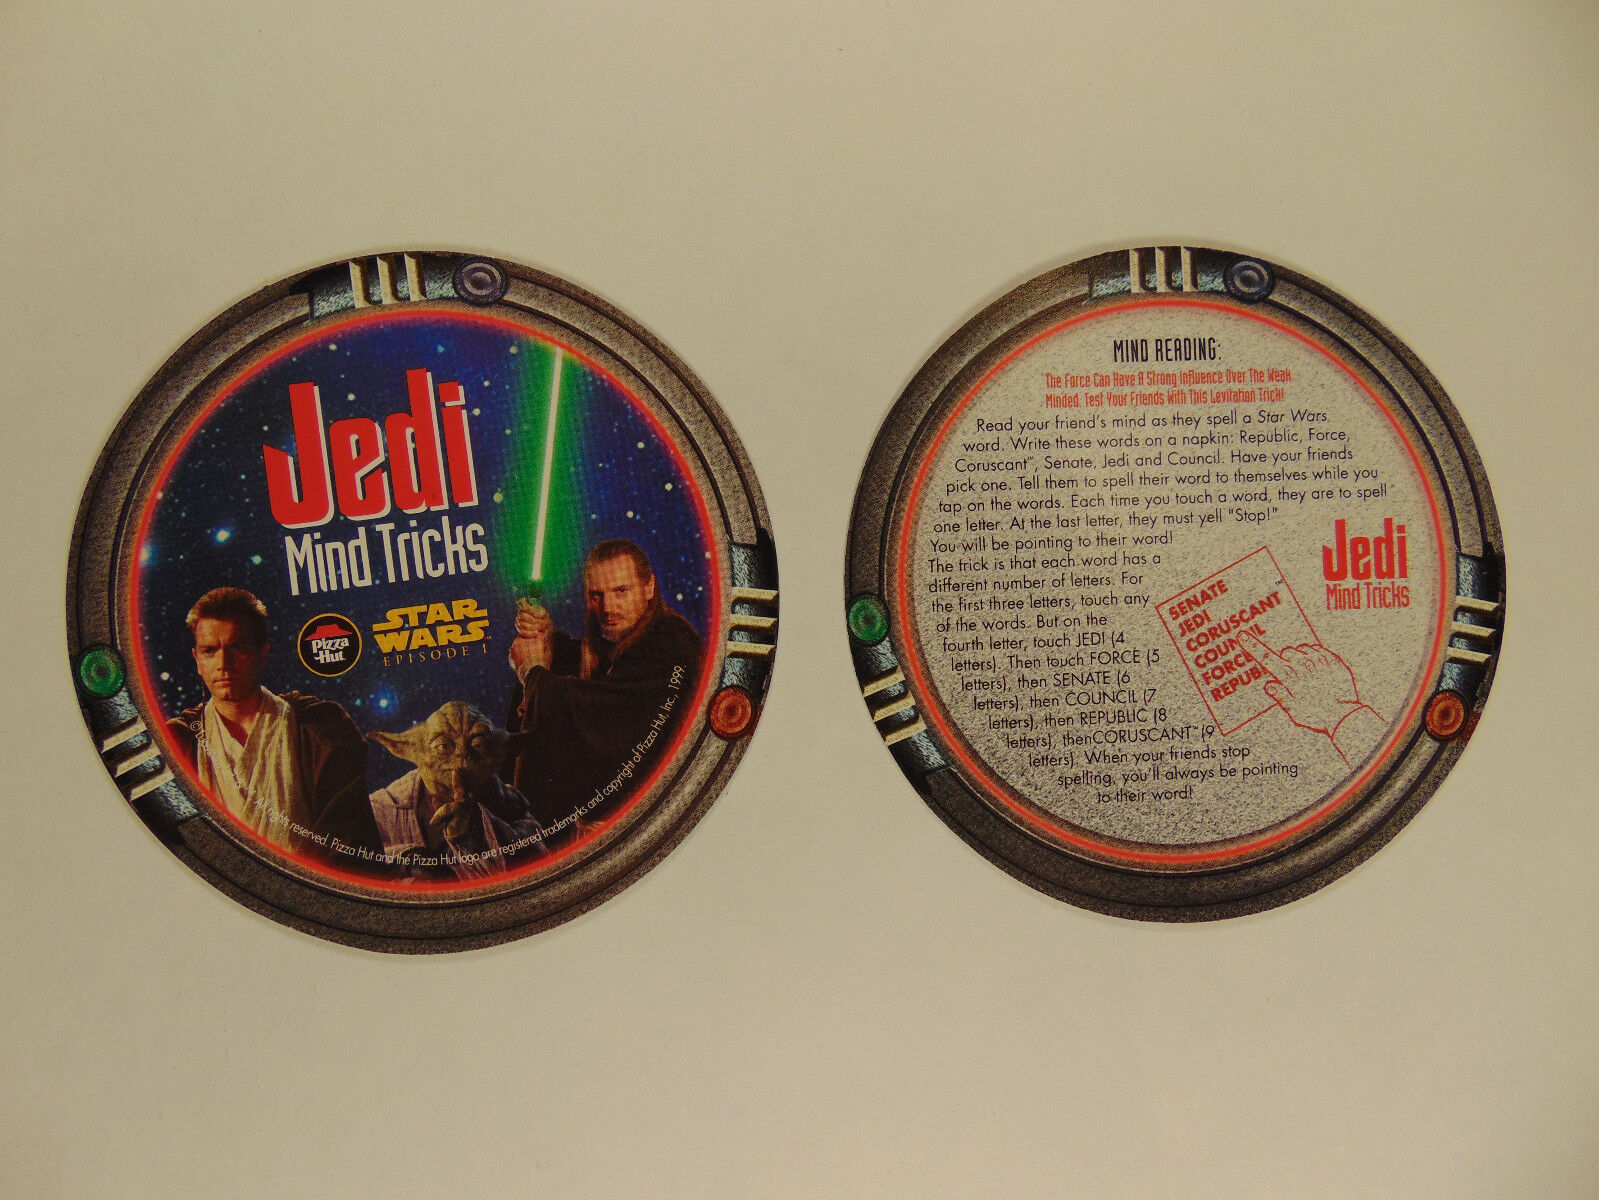 Star Wars episode 1 Pizza Hut tie-in coasters (Jedi Mind Tricks) 1999 (set of 5) Без бренда - фотография #6